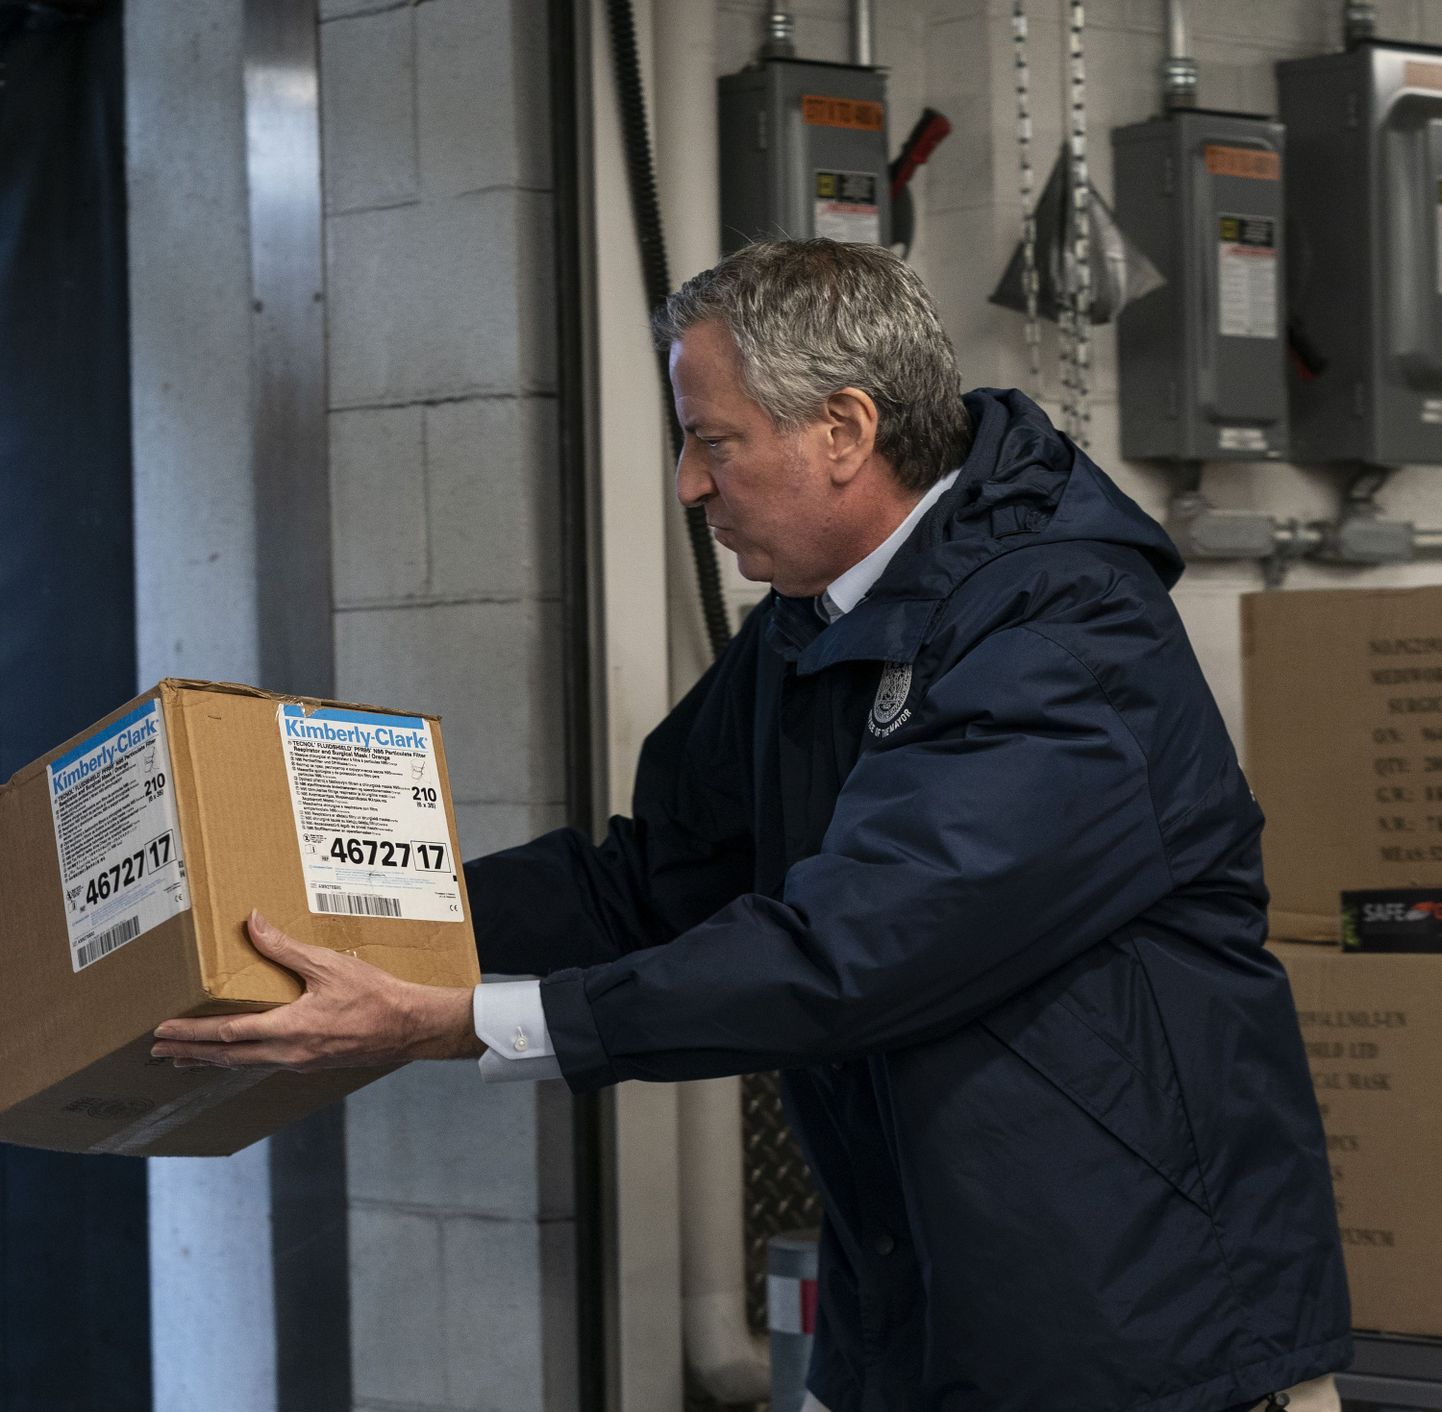 New Yorgi linnapea Bill de Blasio aitab ÜRO garaažis maha laadida sinna saabunud kaste kirurgiliste maskidega, mille annetasid linnale ÜRO peasekretär Antonio Guterres ja USA suursaadik Kelly Craft.